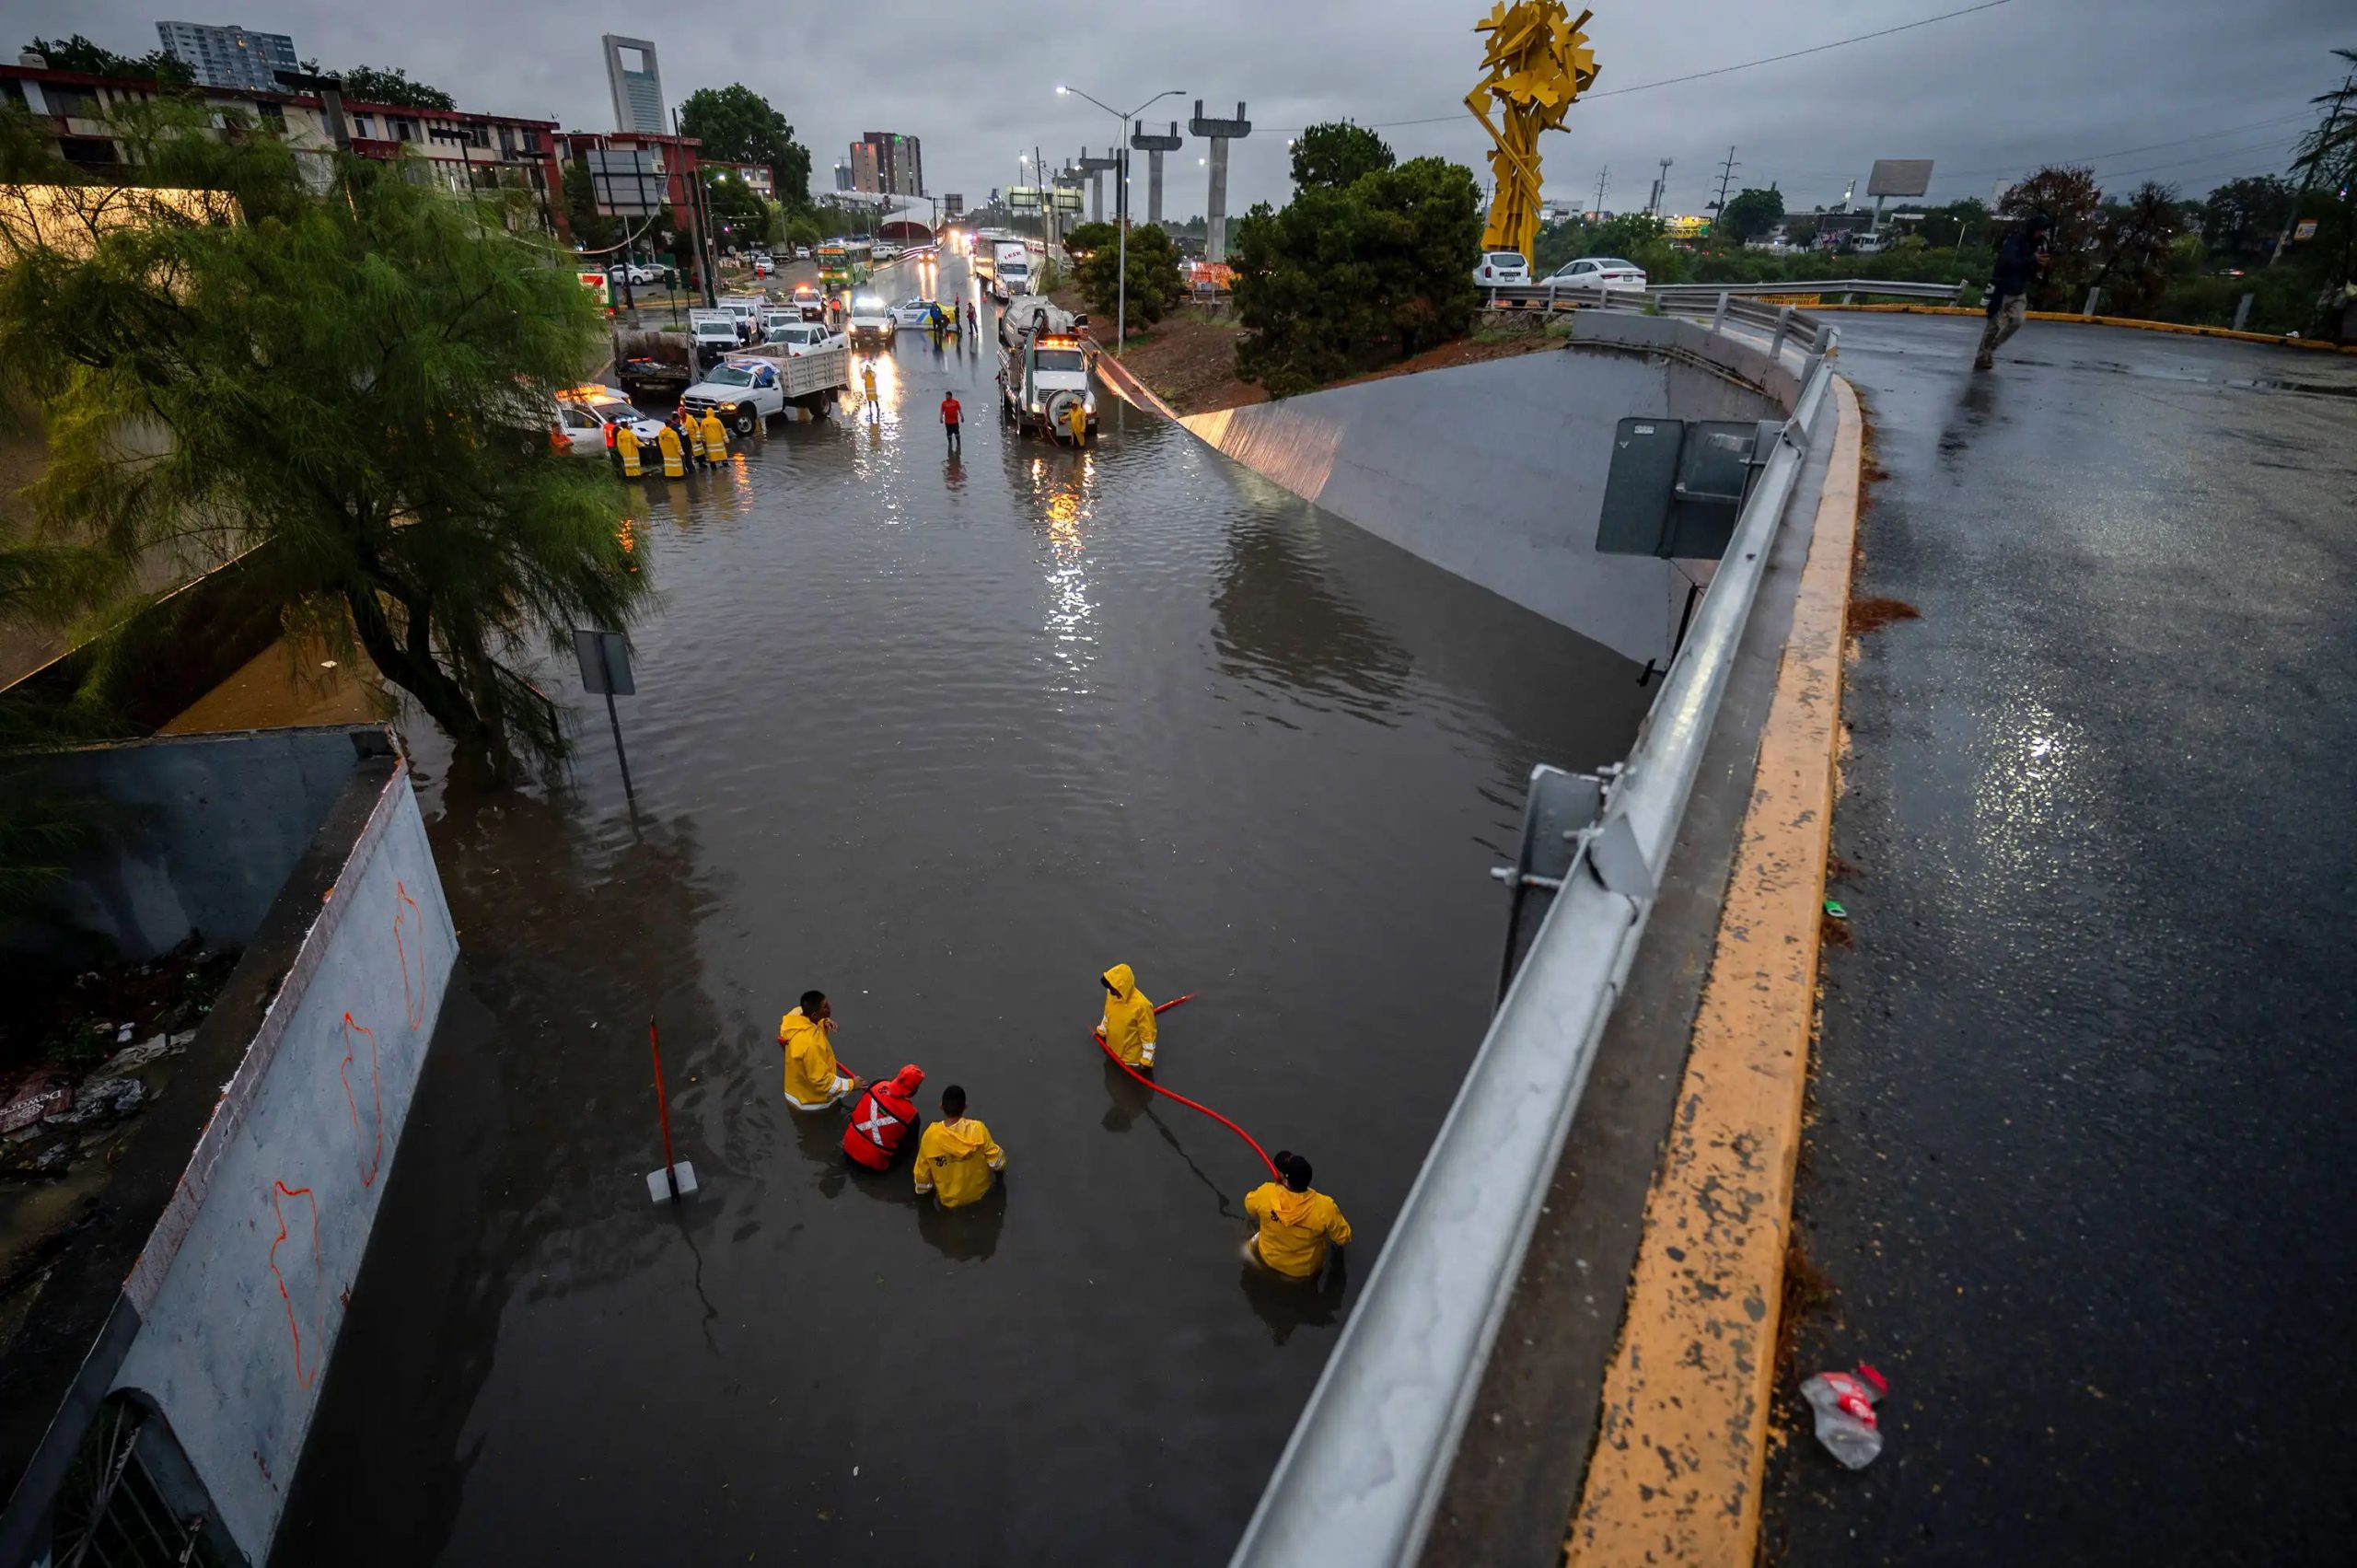 Calles inundadas en Monterrey por las fuertes lluvias. - Foto Miguel Sierra/EFE